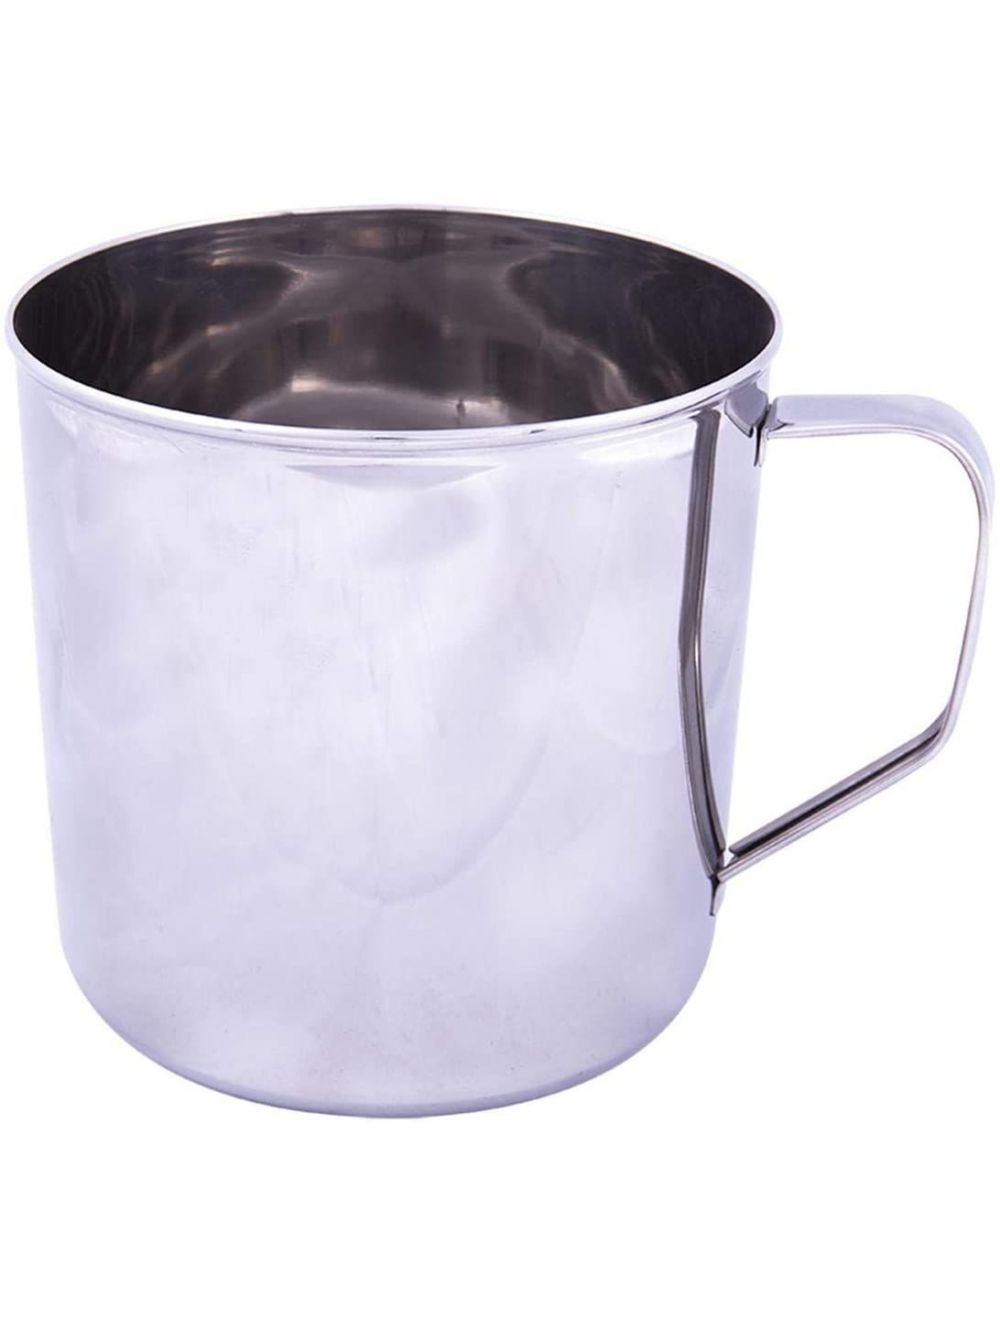 Raj 11.5 cm Stainless Steel Mug, Silver-NM0011